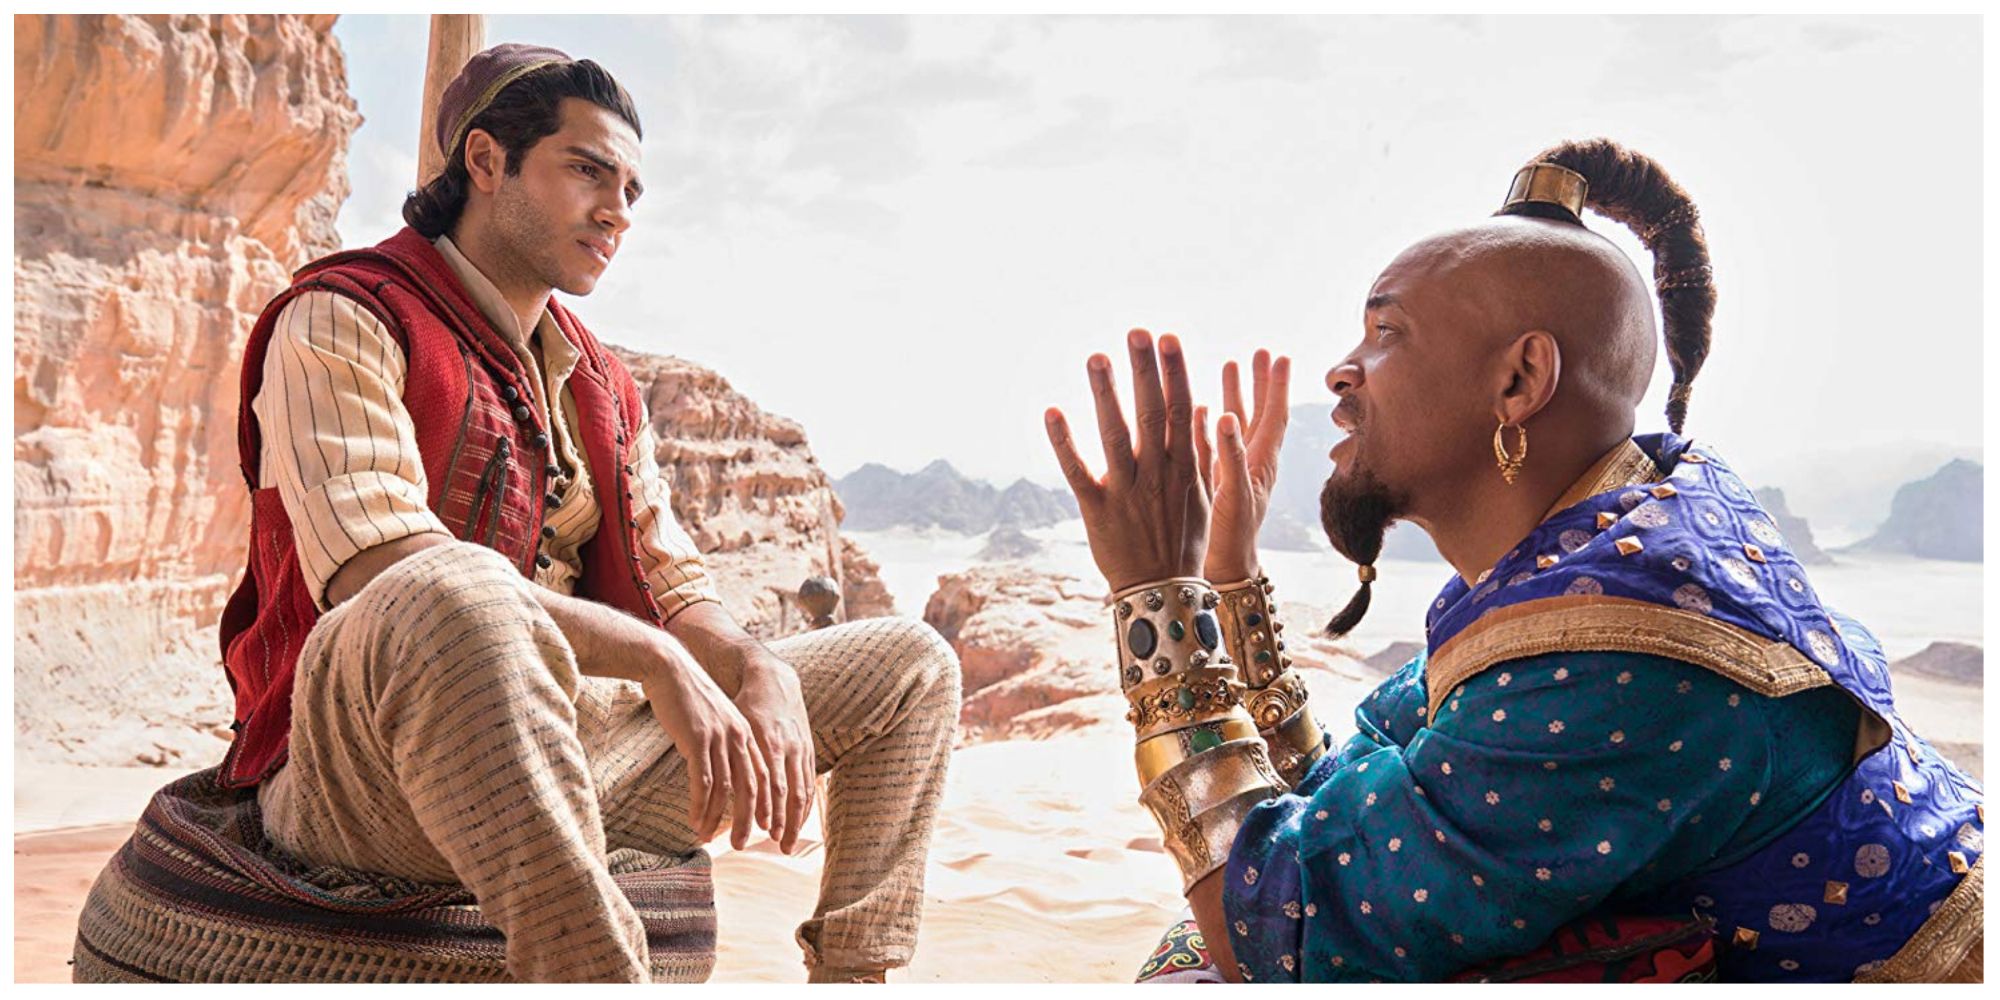 Aladdin and Genie in Aladdin (2019)